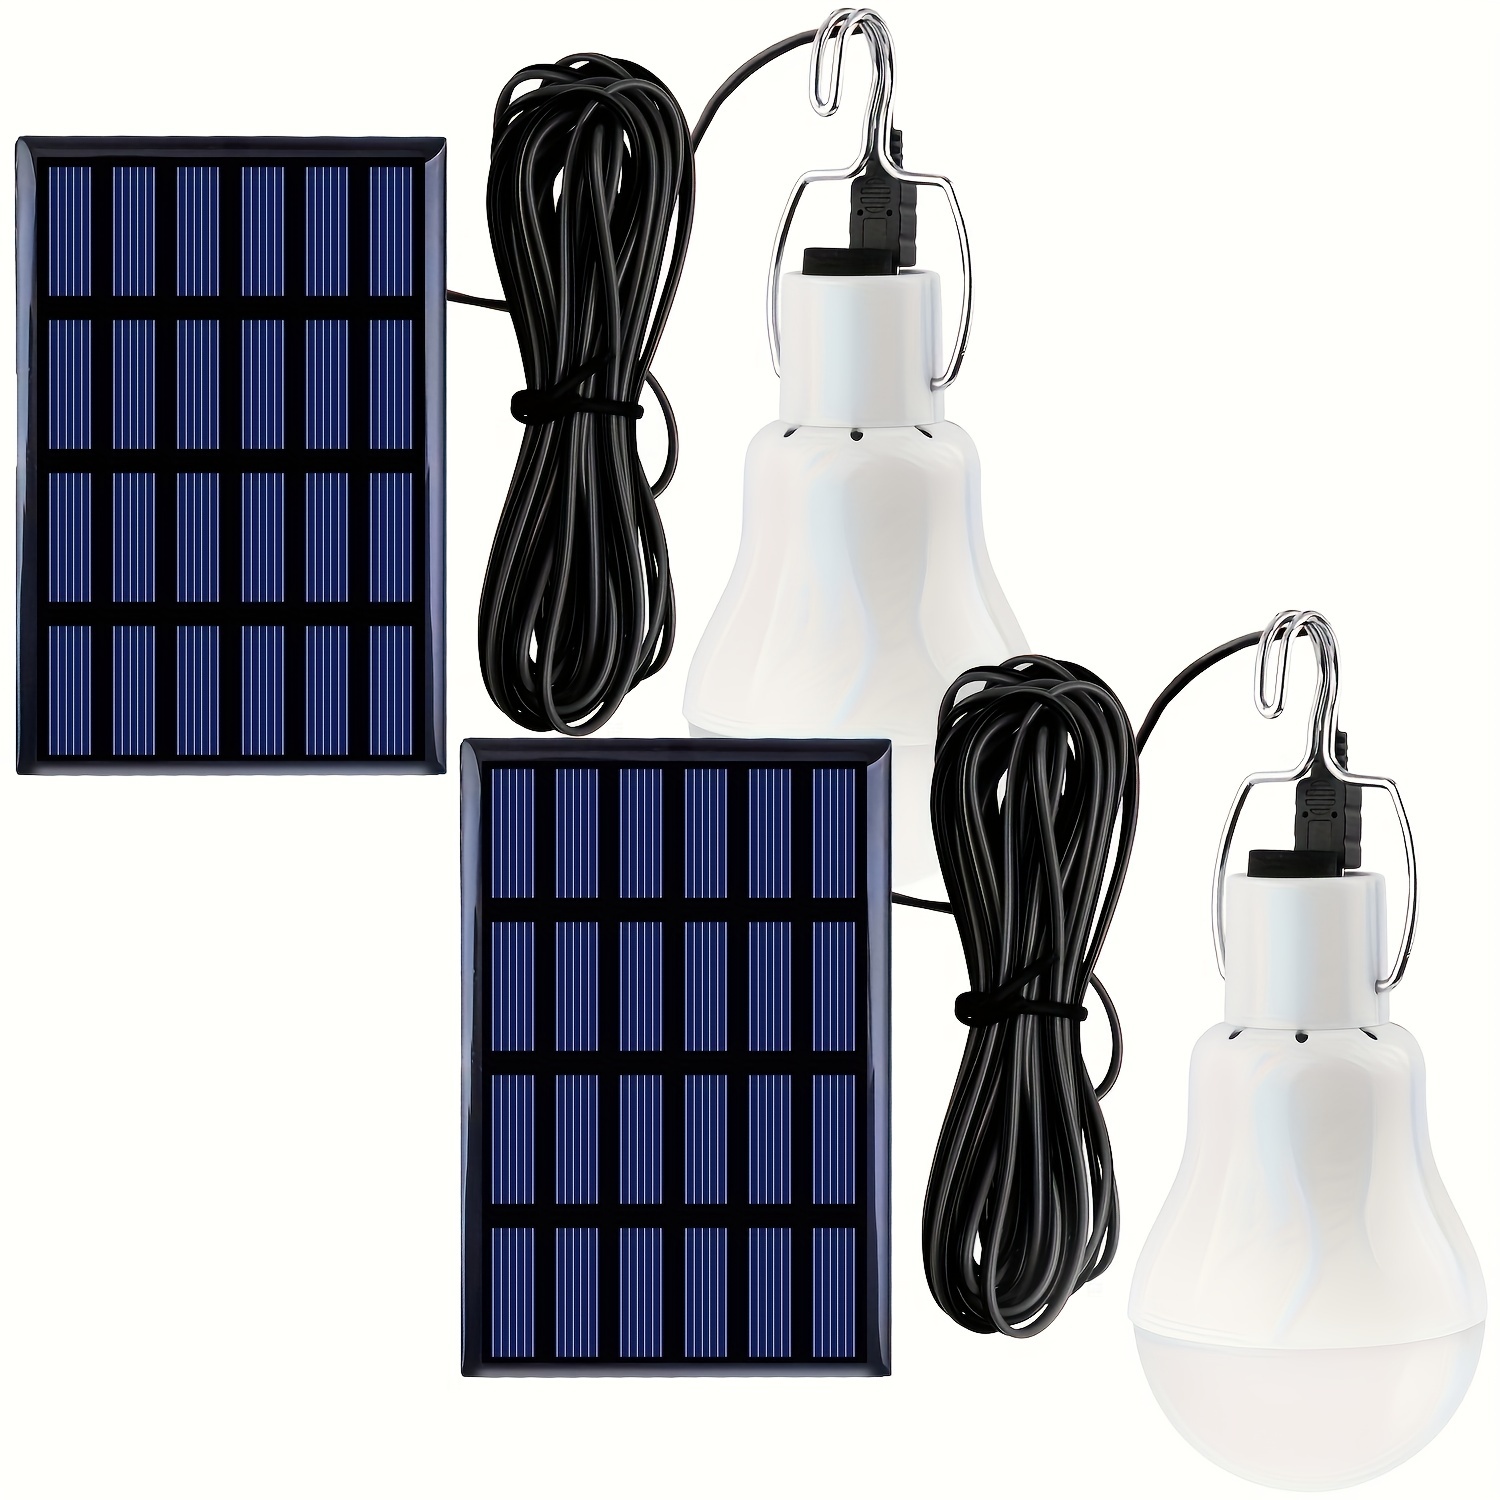 Guirlande solaire ampoules 1.8m, vente au meilleur prix